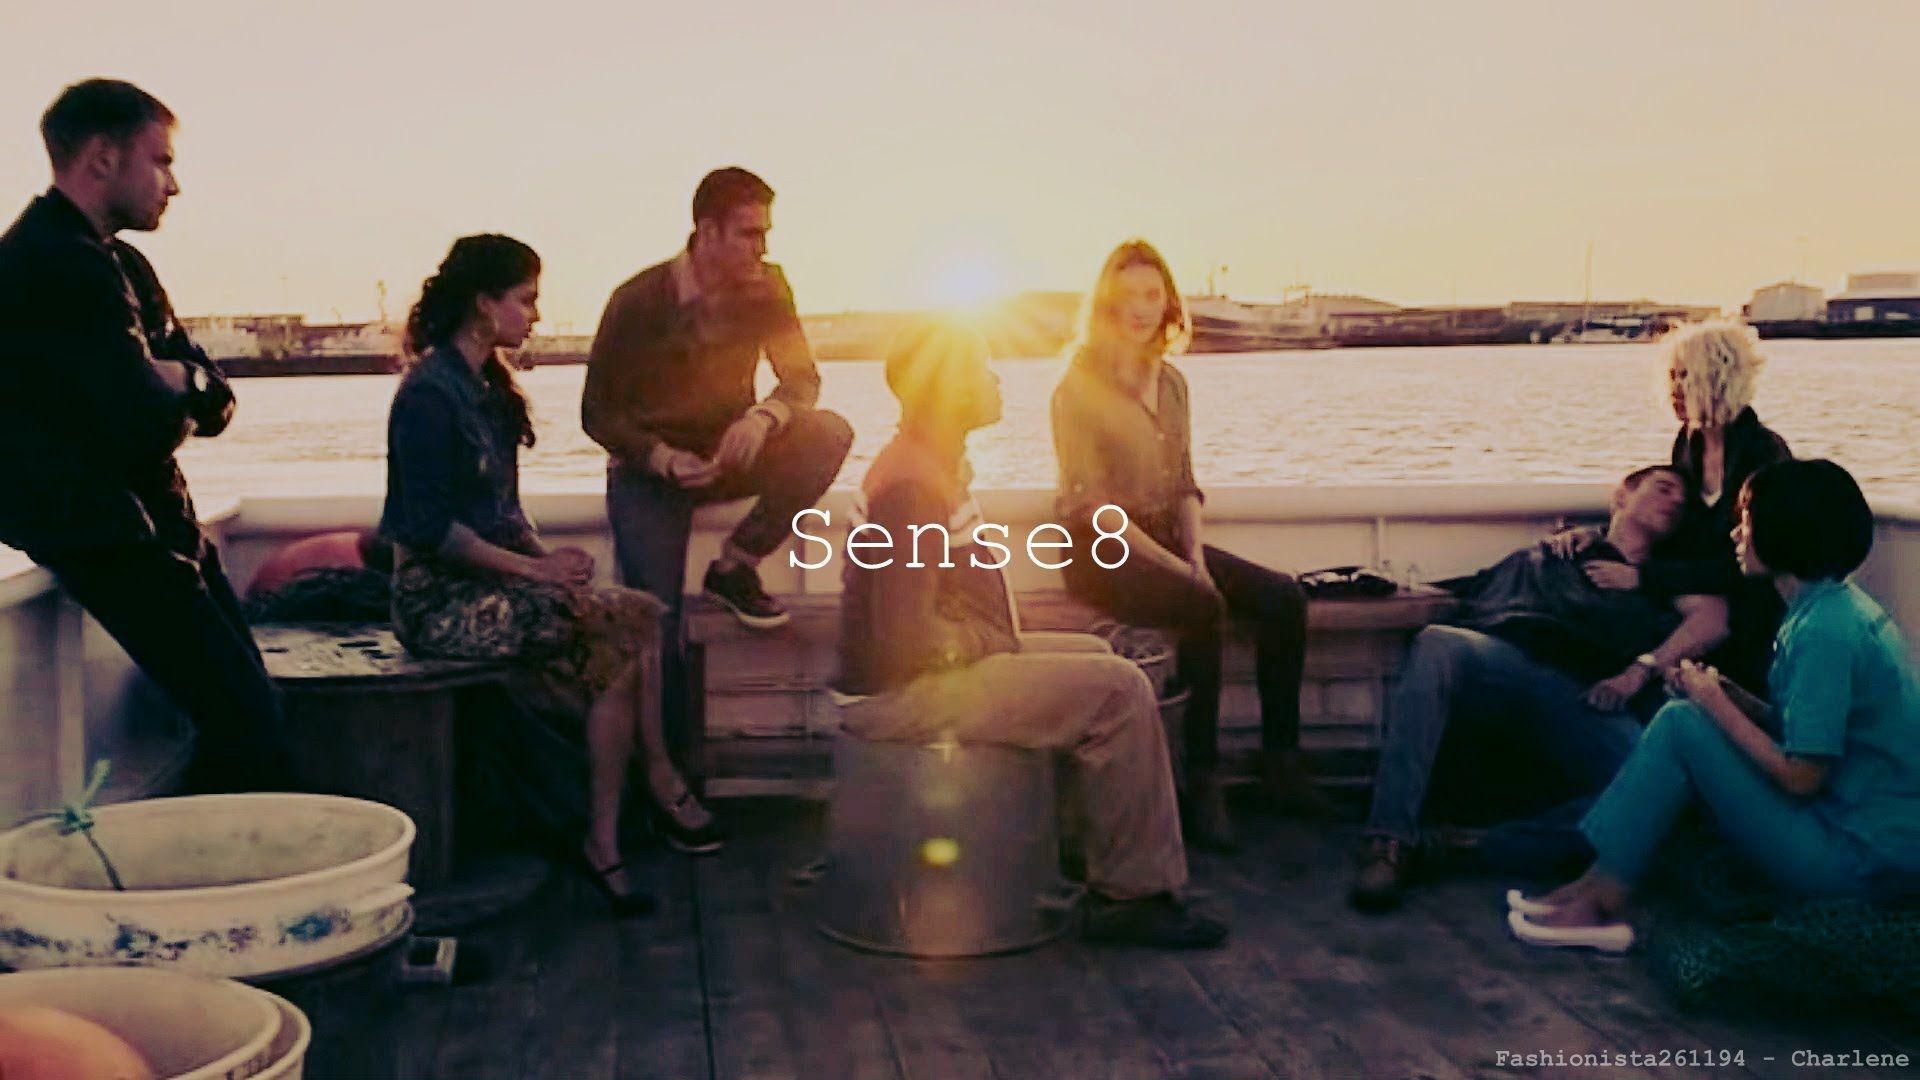 Sense8 HD Wallpapers